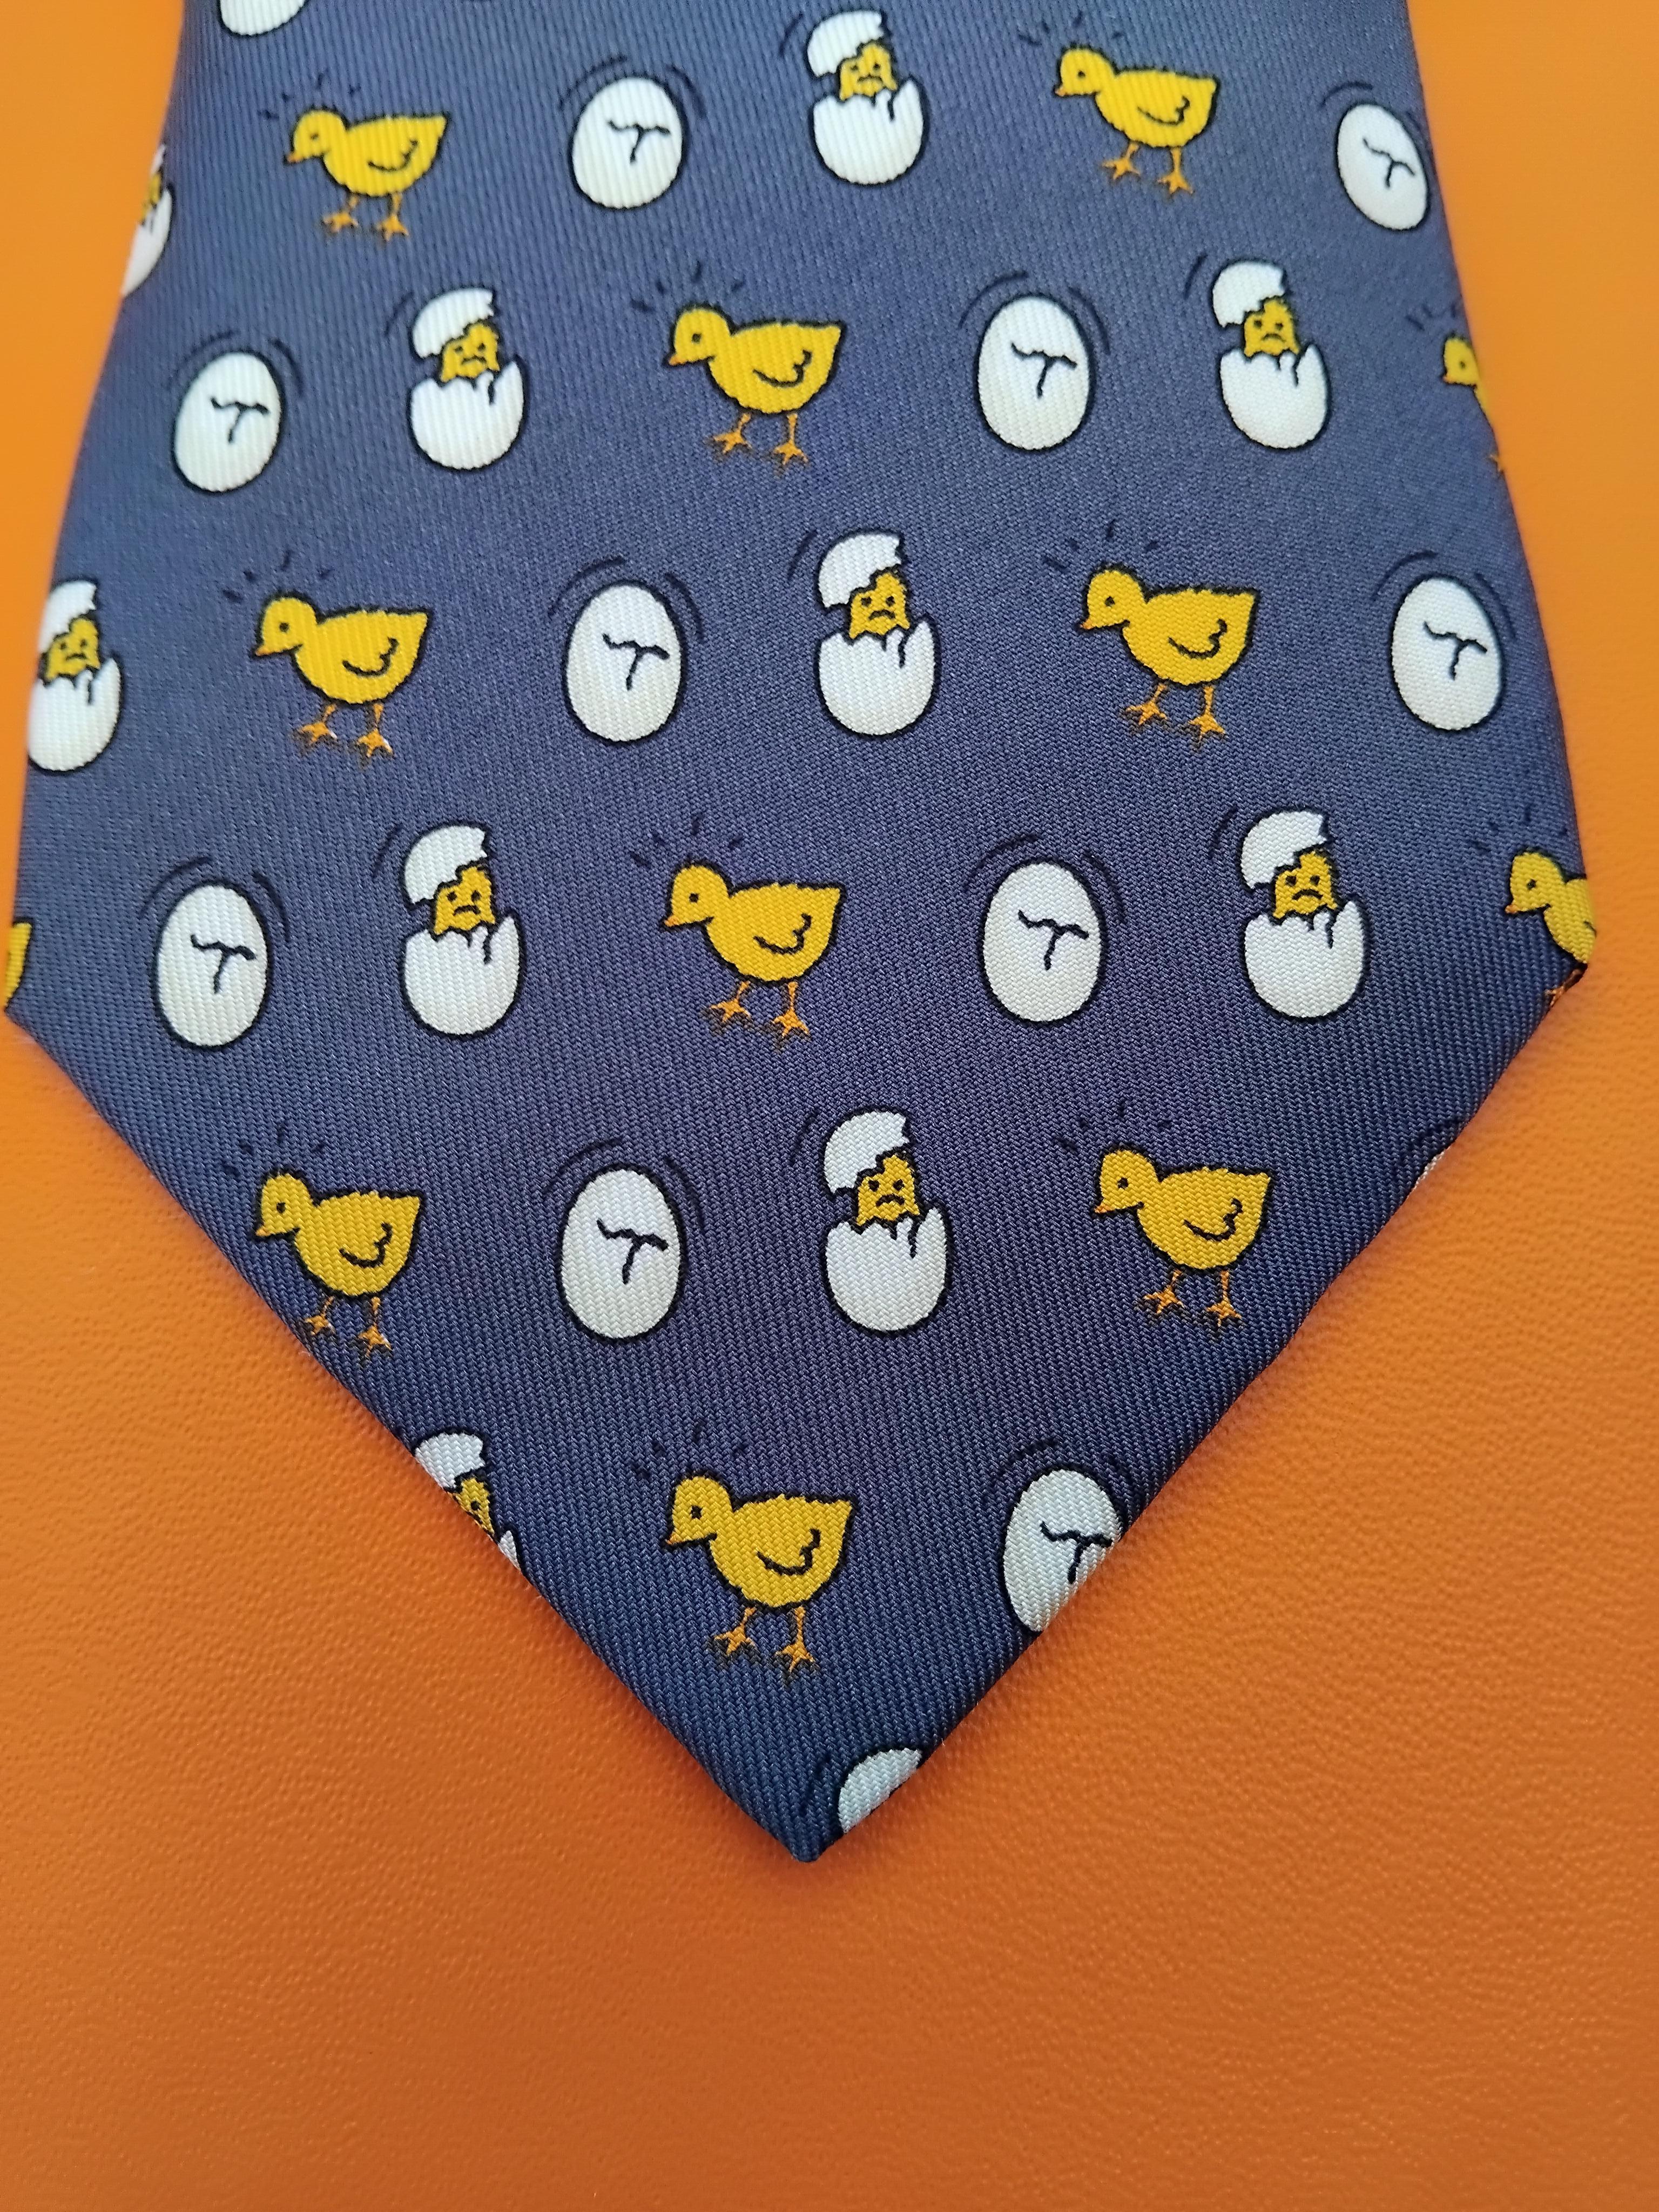 Adorable cravate Hermès authentique

Imprimer : poussins et coquilles d'oeufs

Fabriqué en France

Fabriqué en 100% soie

Coloris : Bleu marine / Jaune / Blanc

Doublé de soie bleu marine unie

